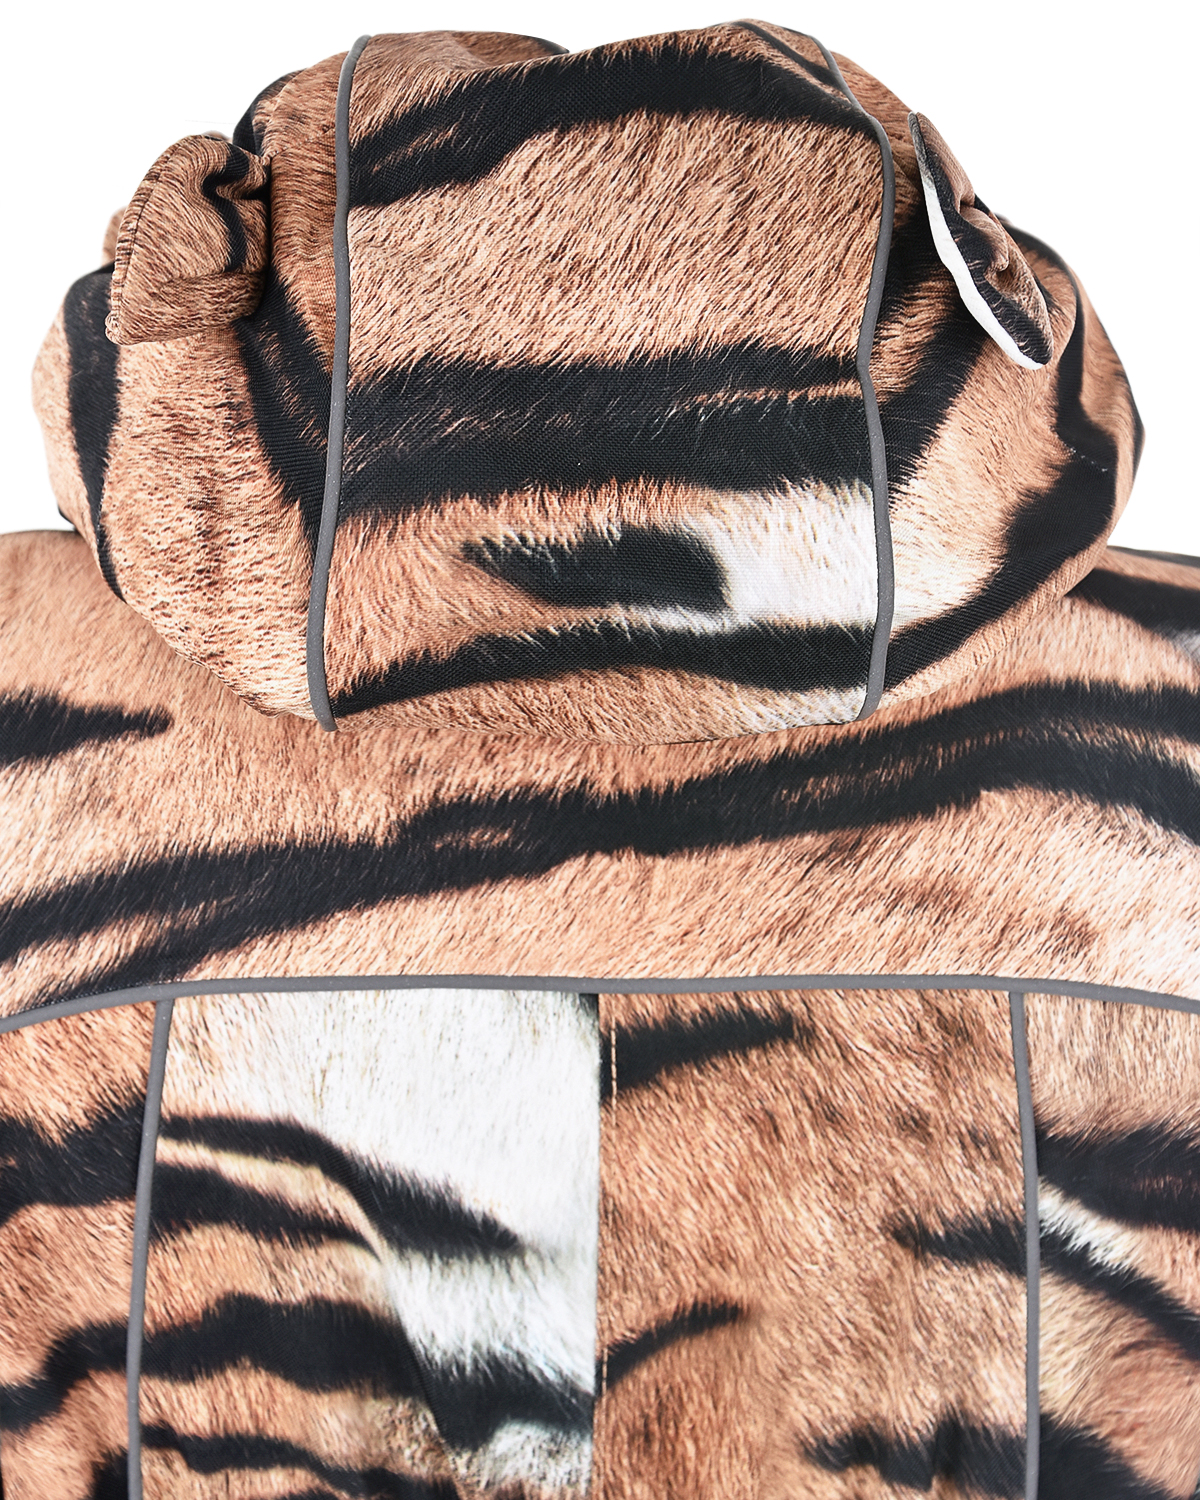 Комбинезон с принтом "Тигр" Molo детский, размер 80, цвет коричневый - фото 3